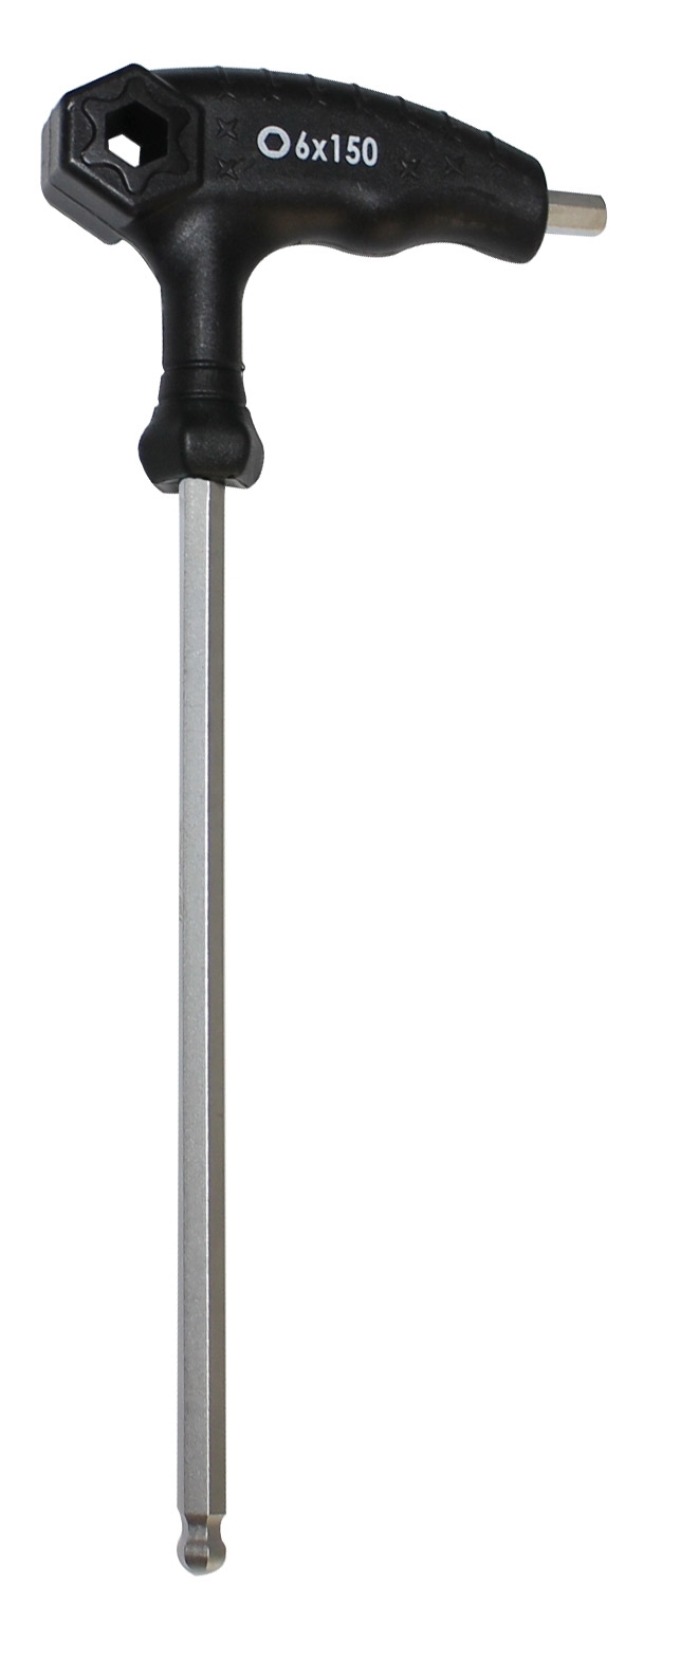 Dvoustranný inbusový klíč 6 mm s kuličkou a ergonomicky tvarovanou rukojetí ve tvaru T, celková délka 215 x 85 mm, materiál chrom-vanadiová ocel a plast, hmotnost 88 g, baleno v sáčku, určeno k PROFI použití